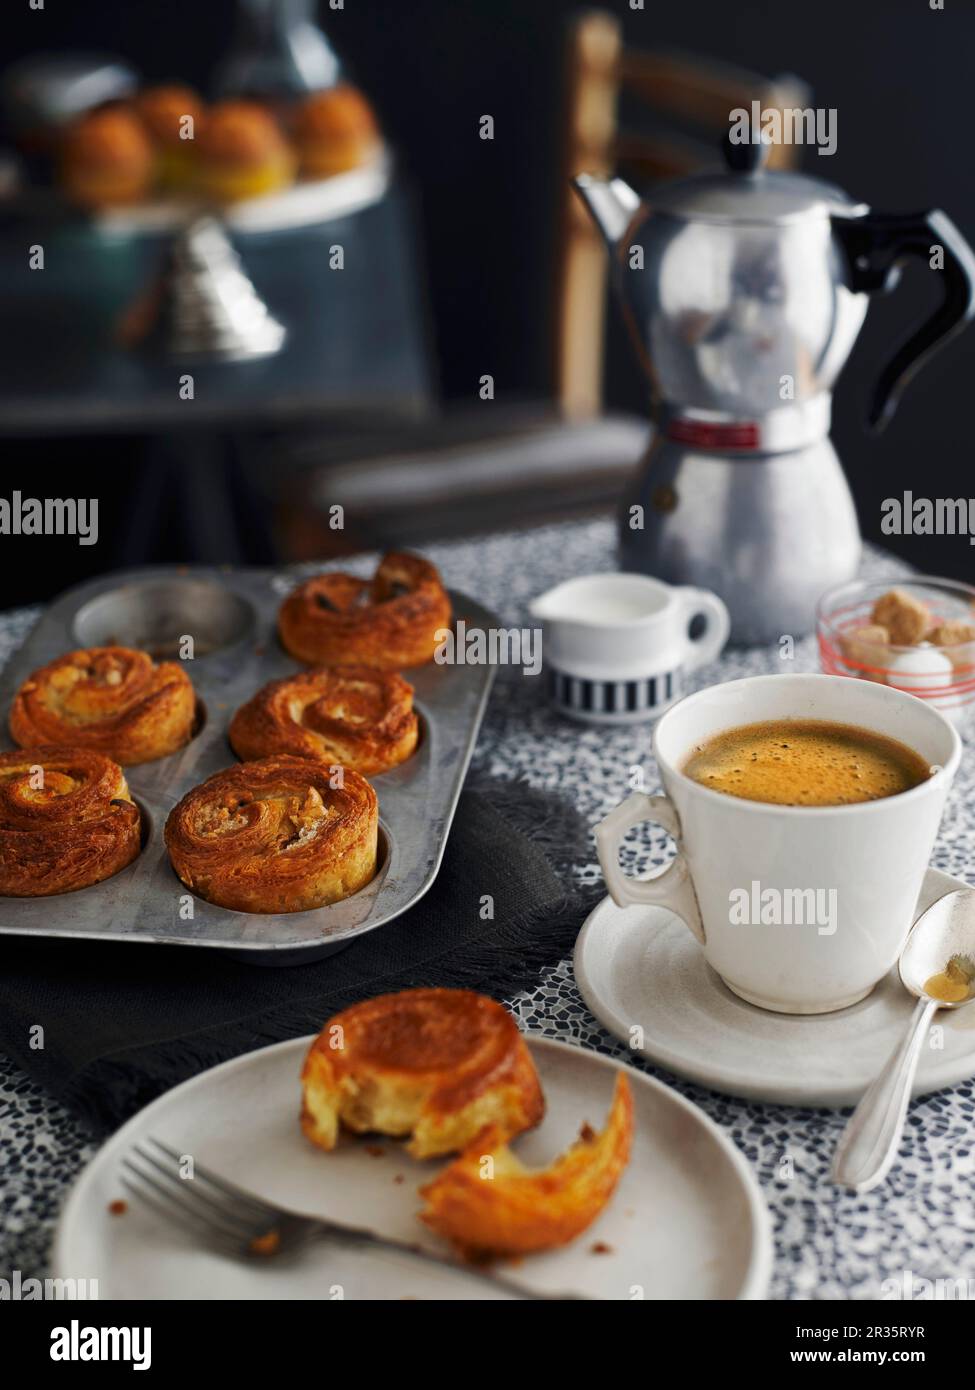 La prensa francesa tradicional café, cafetera y una pequeña taza blanca con  una cuchara de plata,galletas y chocolate Fotografía de stock - Alamy